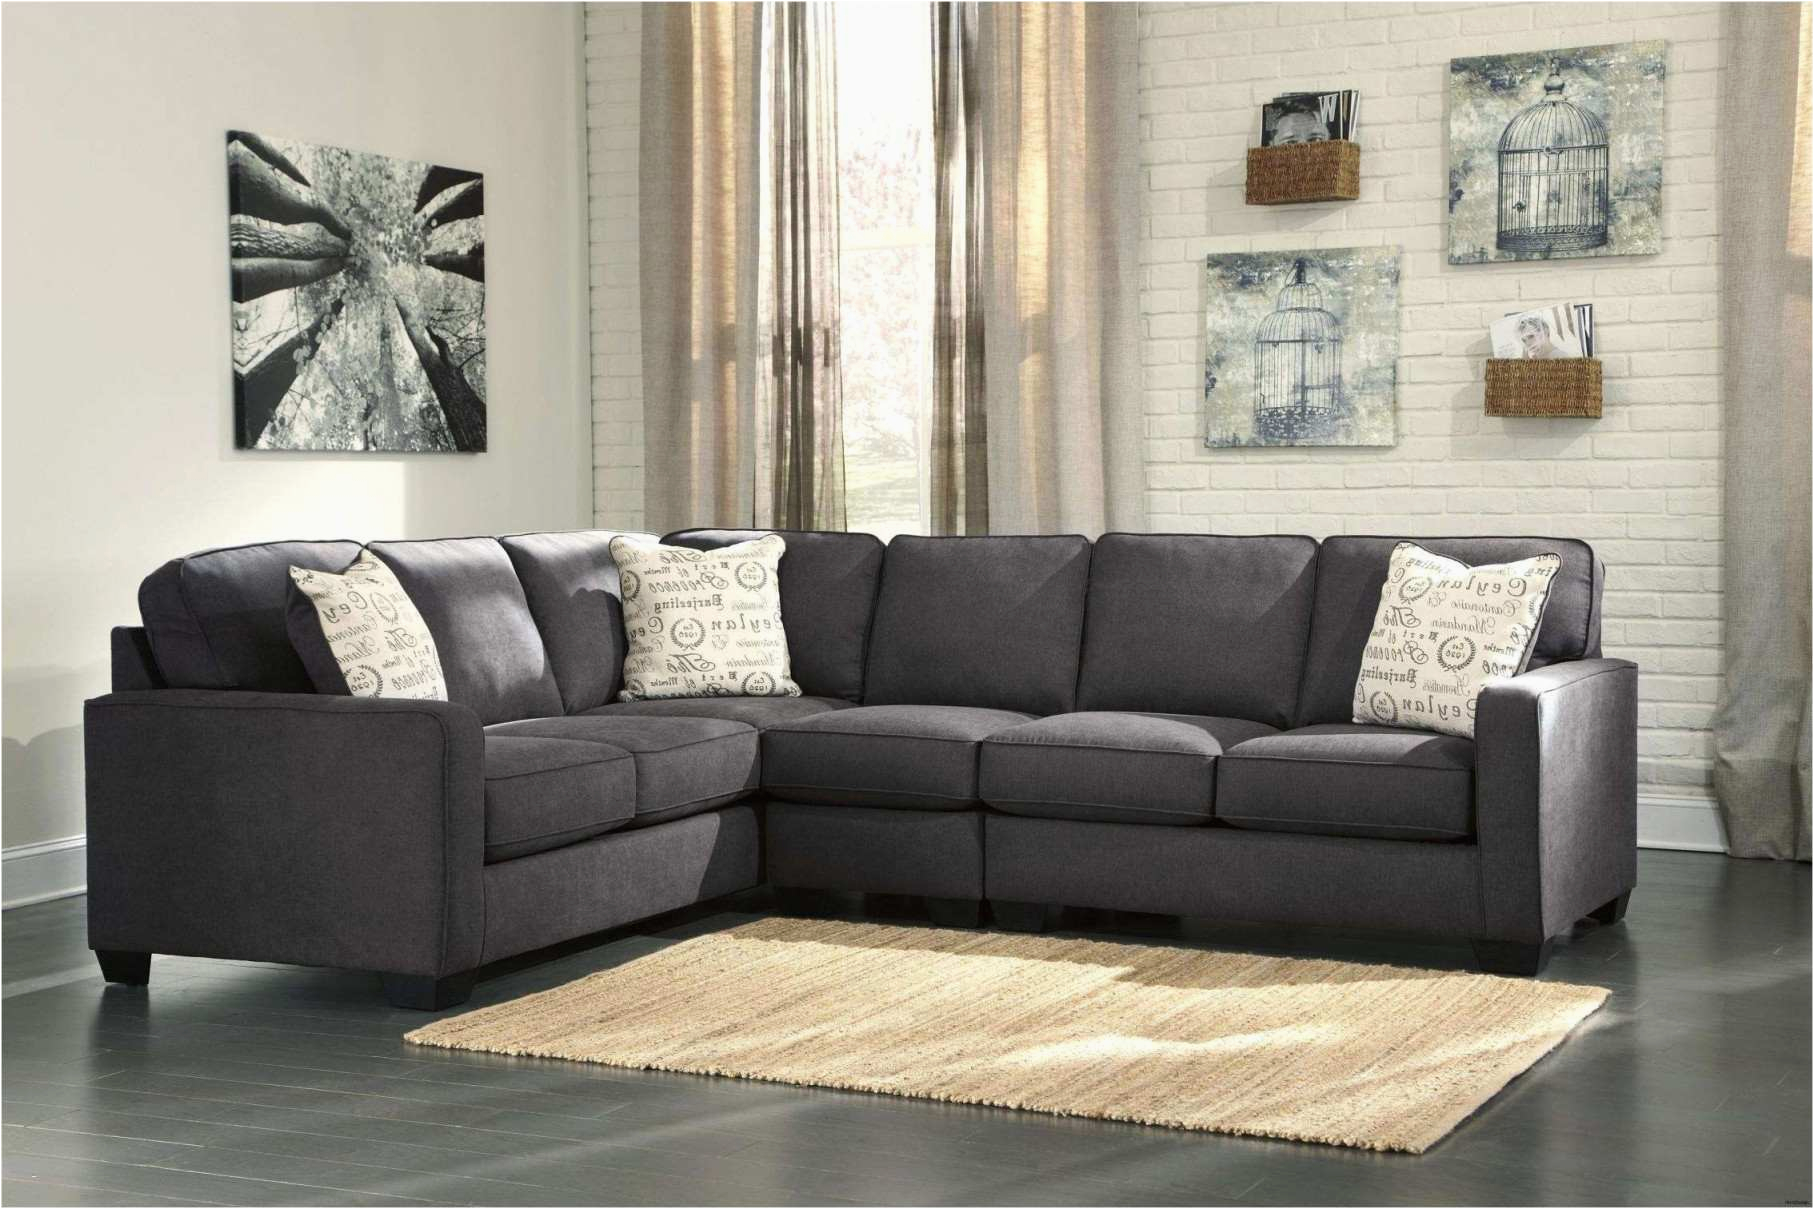 sofa mit tisch elegant xxl lutz tv mobel belle xxl couch genial xxl sofa l form of sofa mit tisch